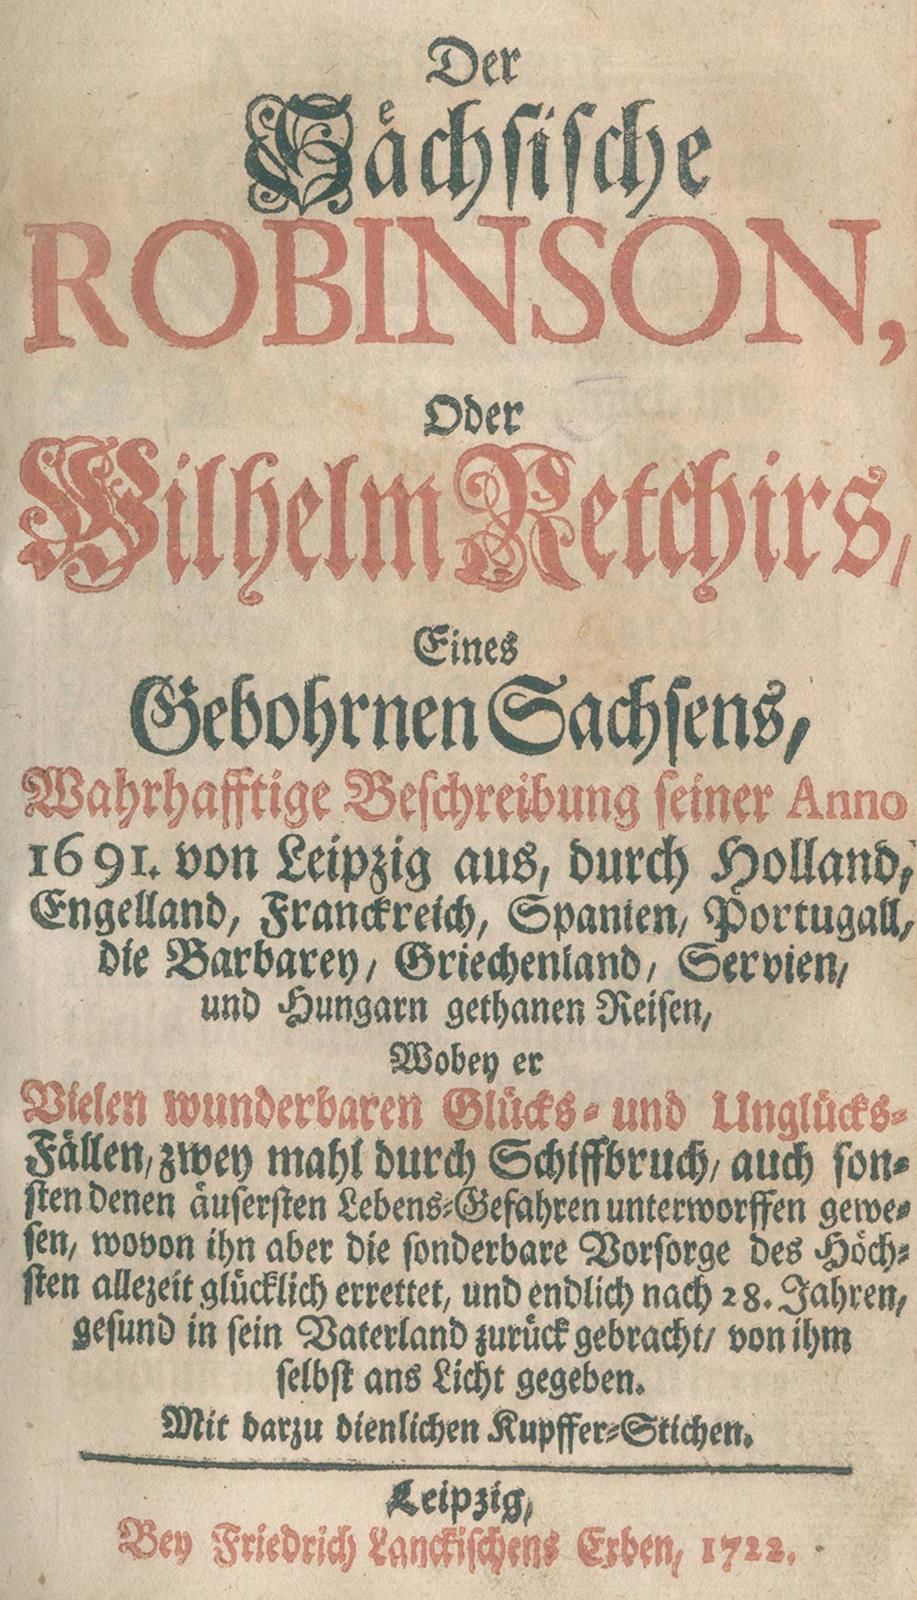 Sächsische Robinson, Der, oder Wilhelm Retchirs, eines gebohrnen Sachsens, wahrh&hellip;